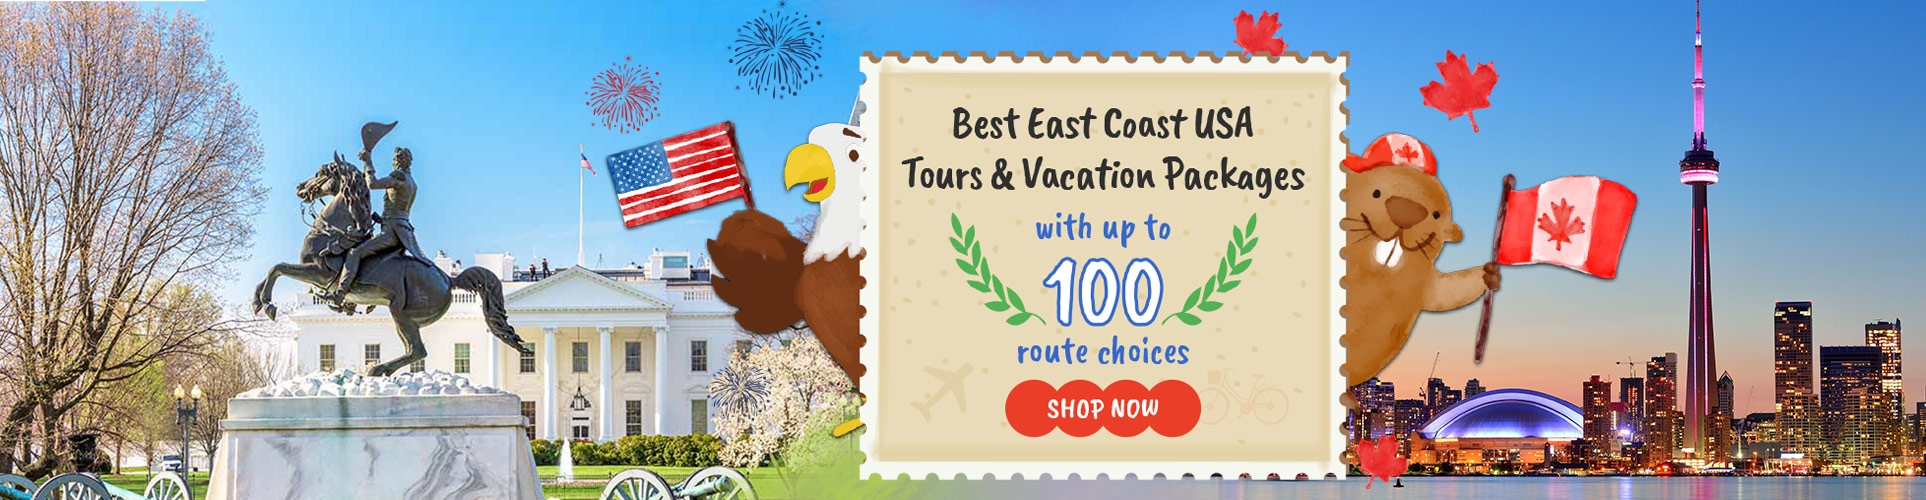 east coast usa tours